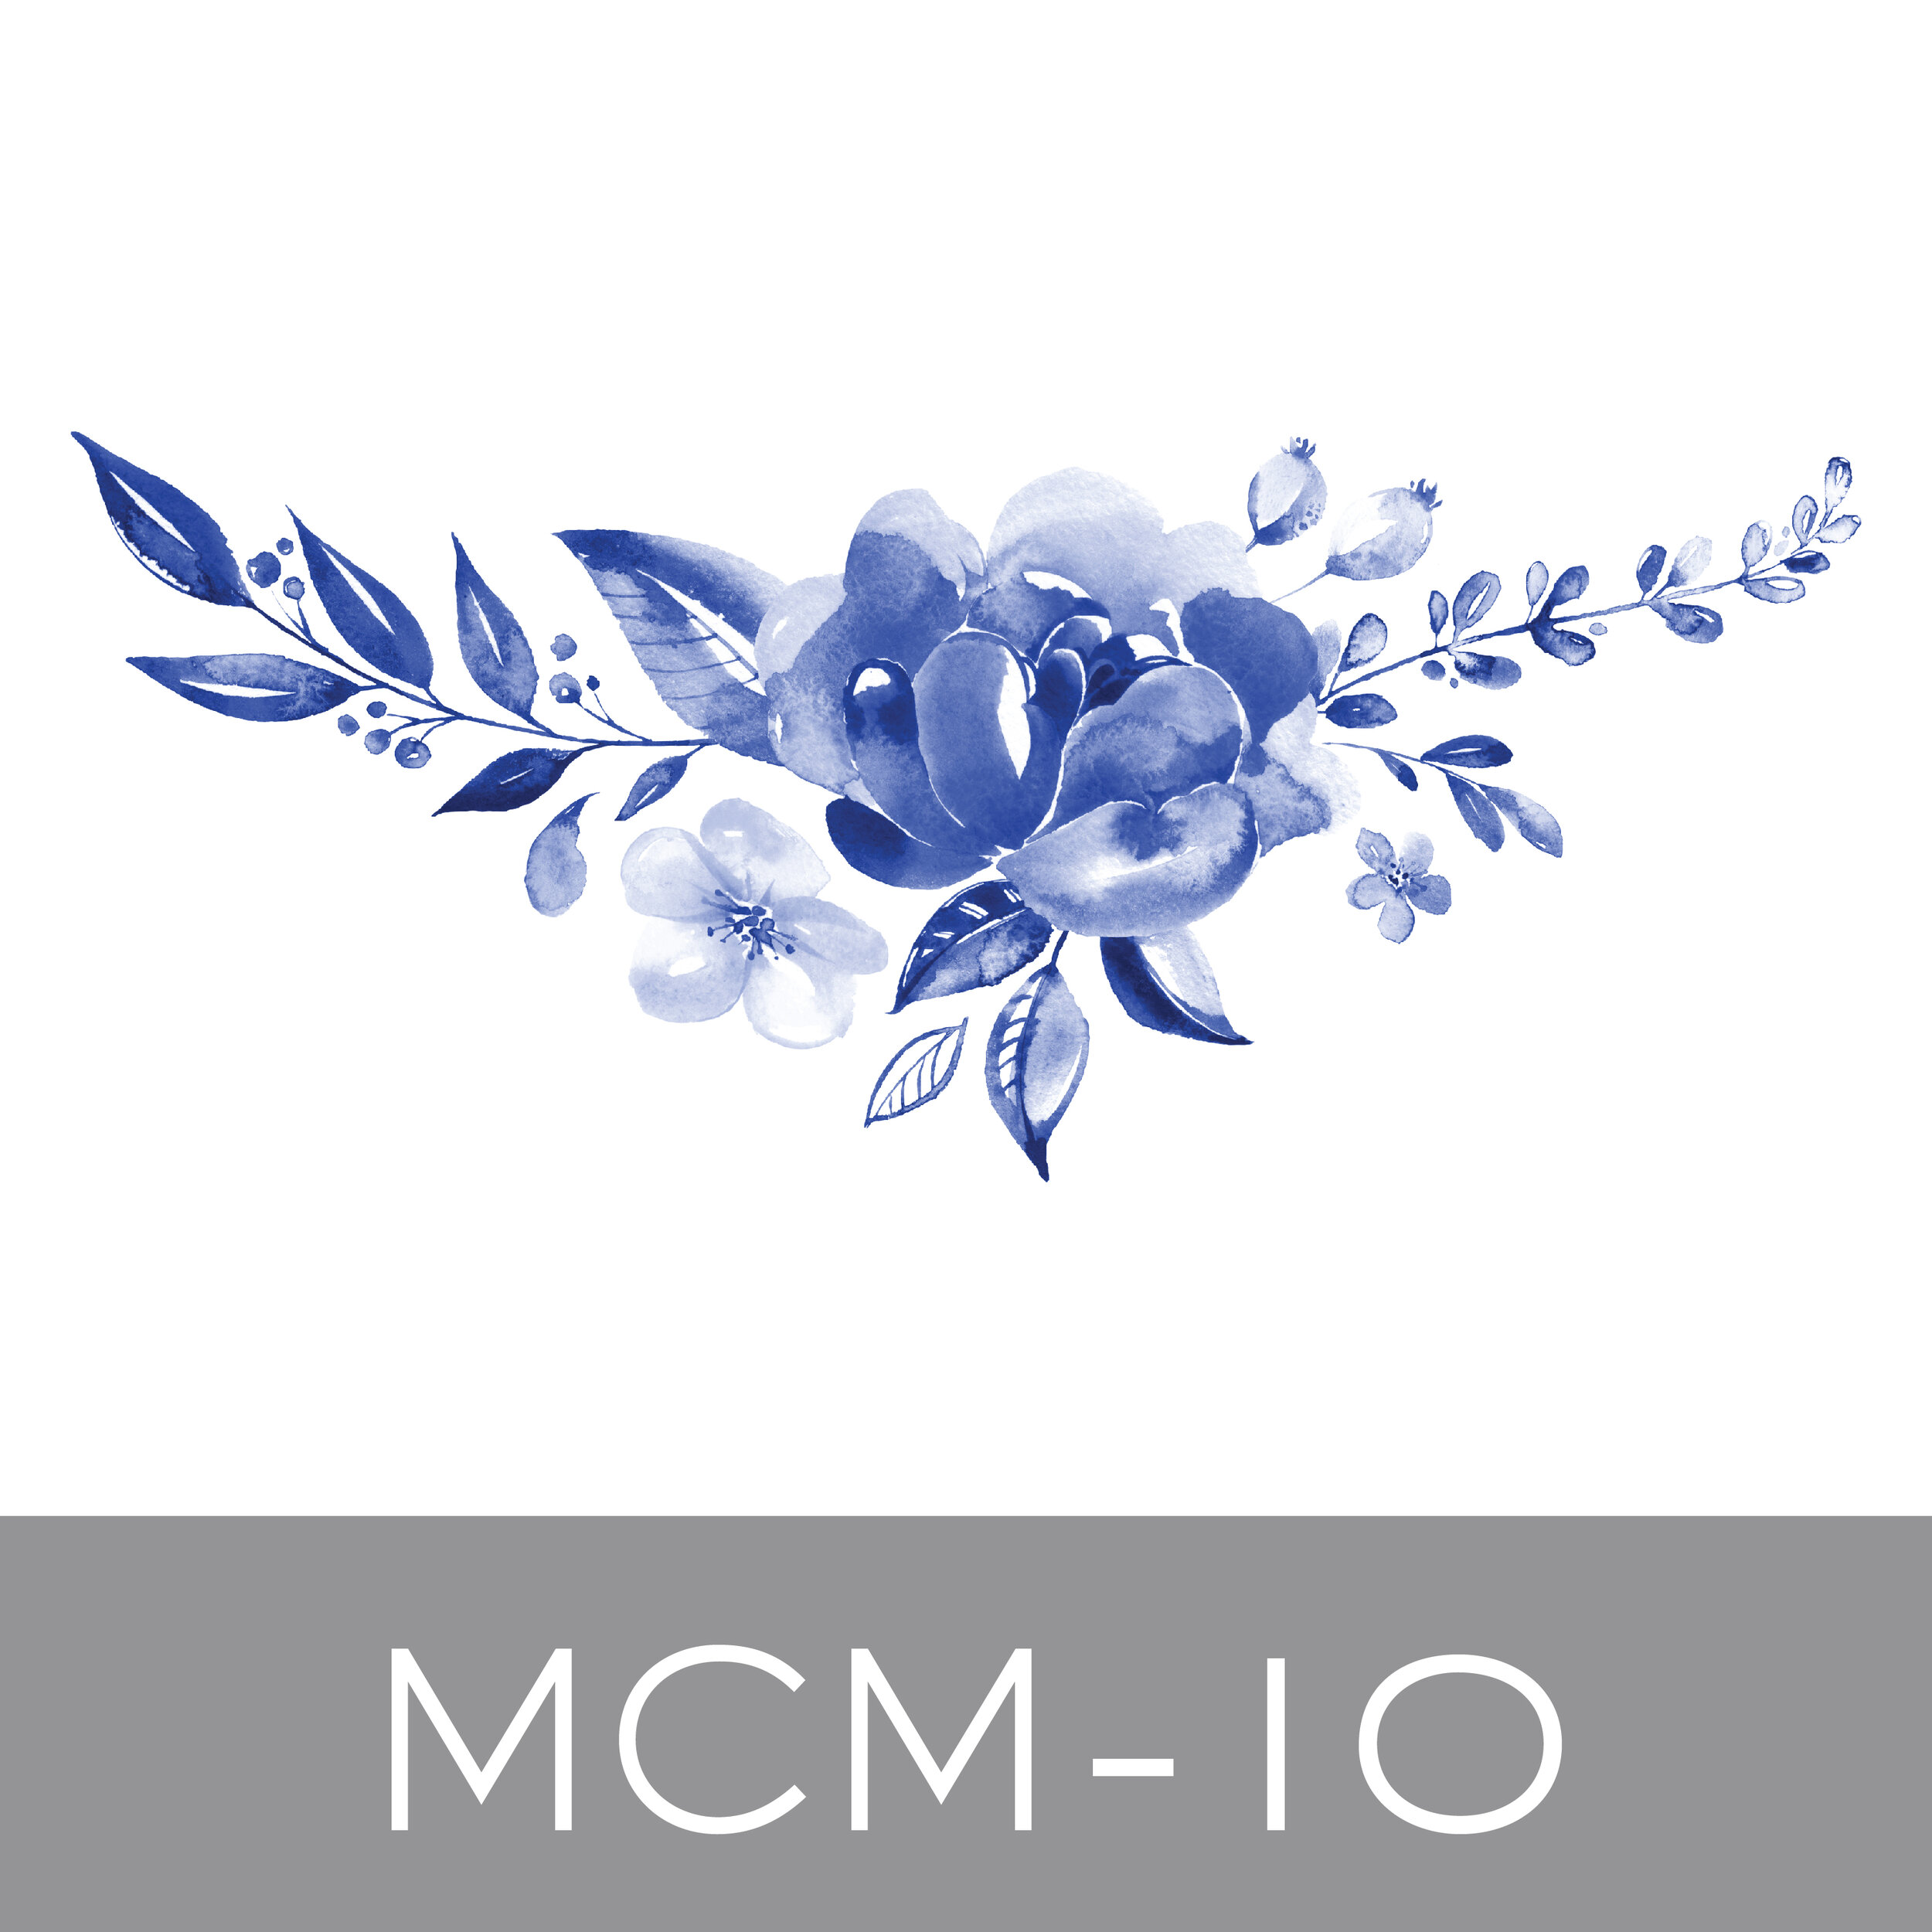 MCM-10.jpg